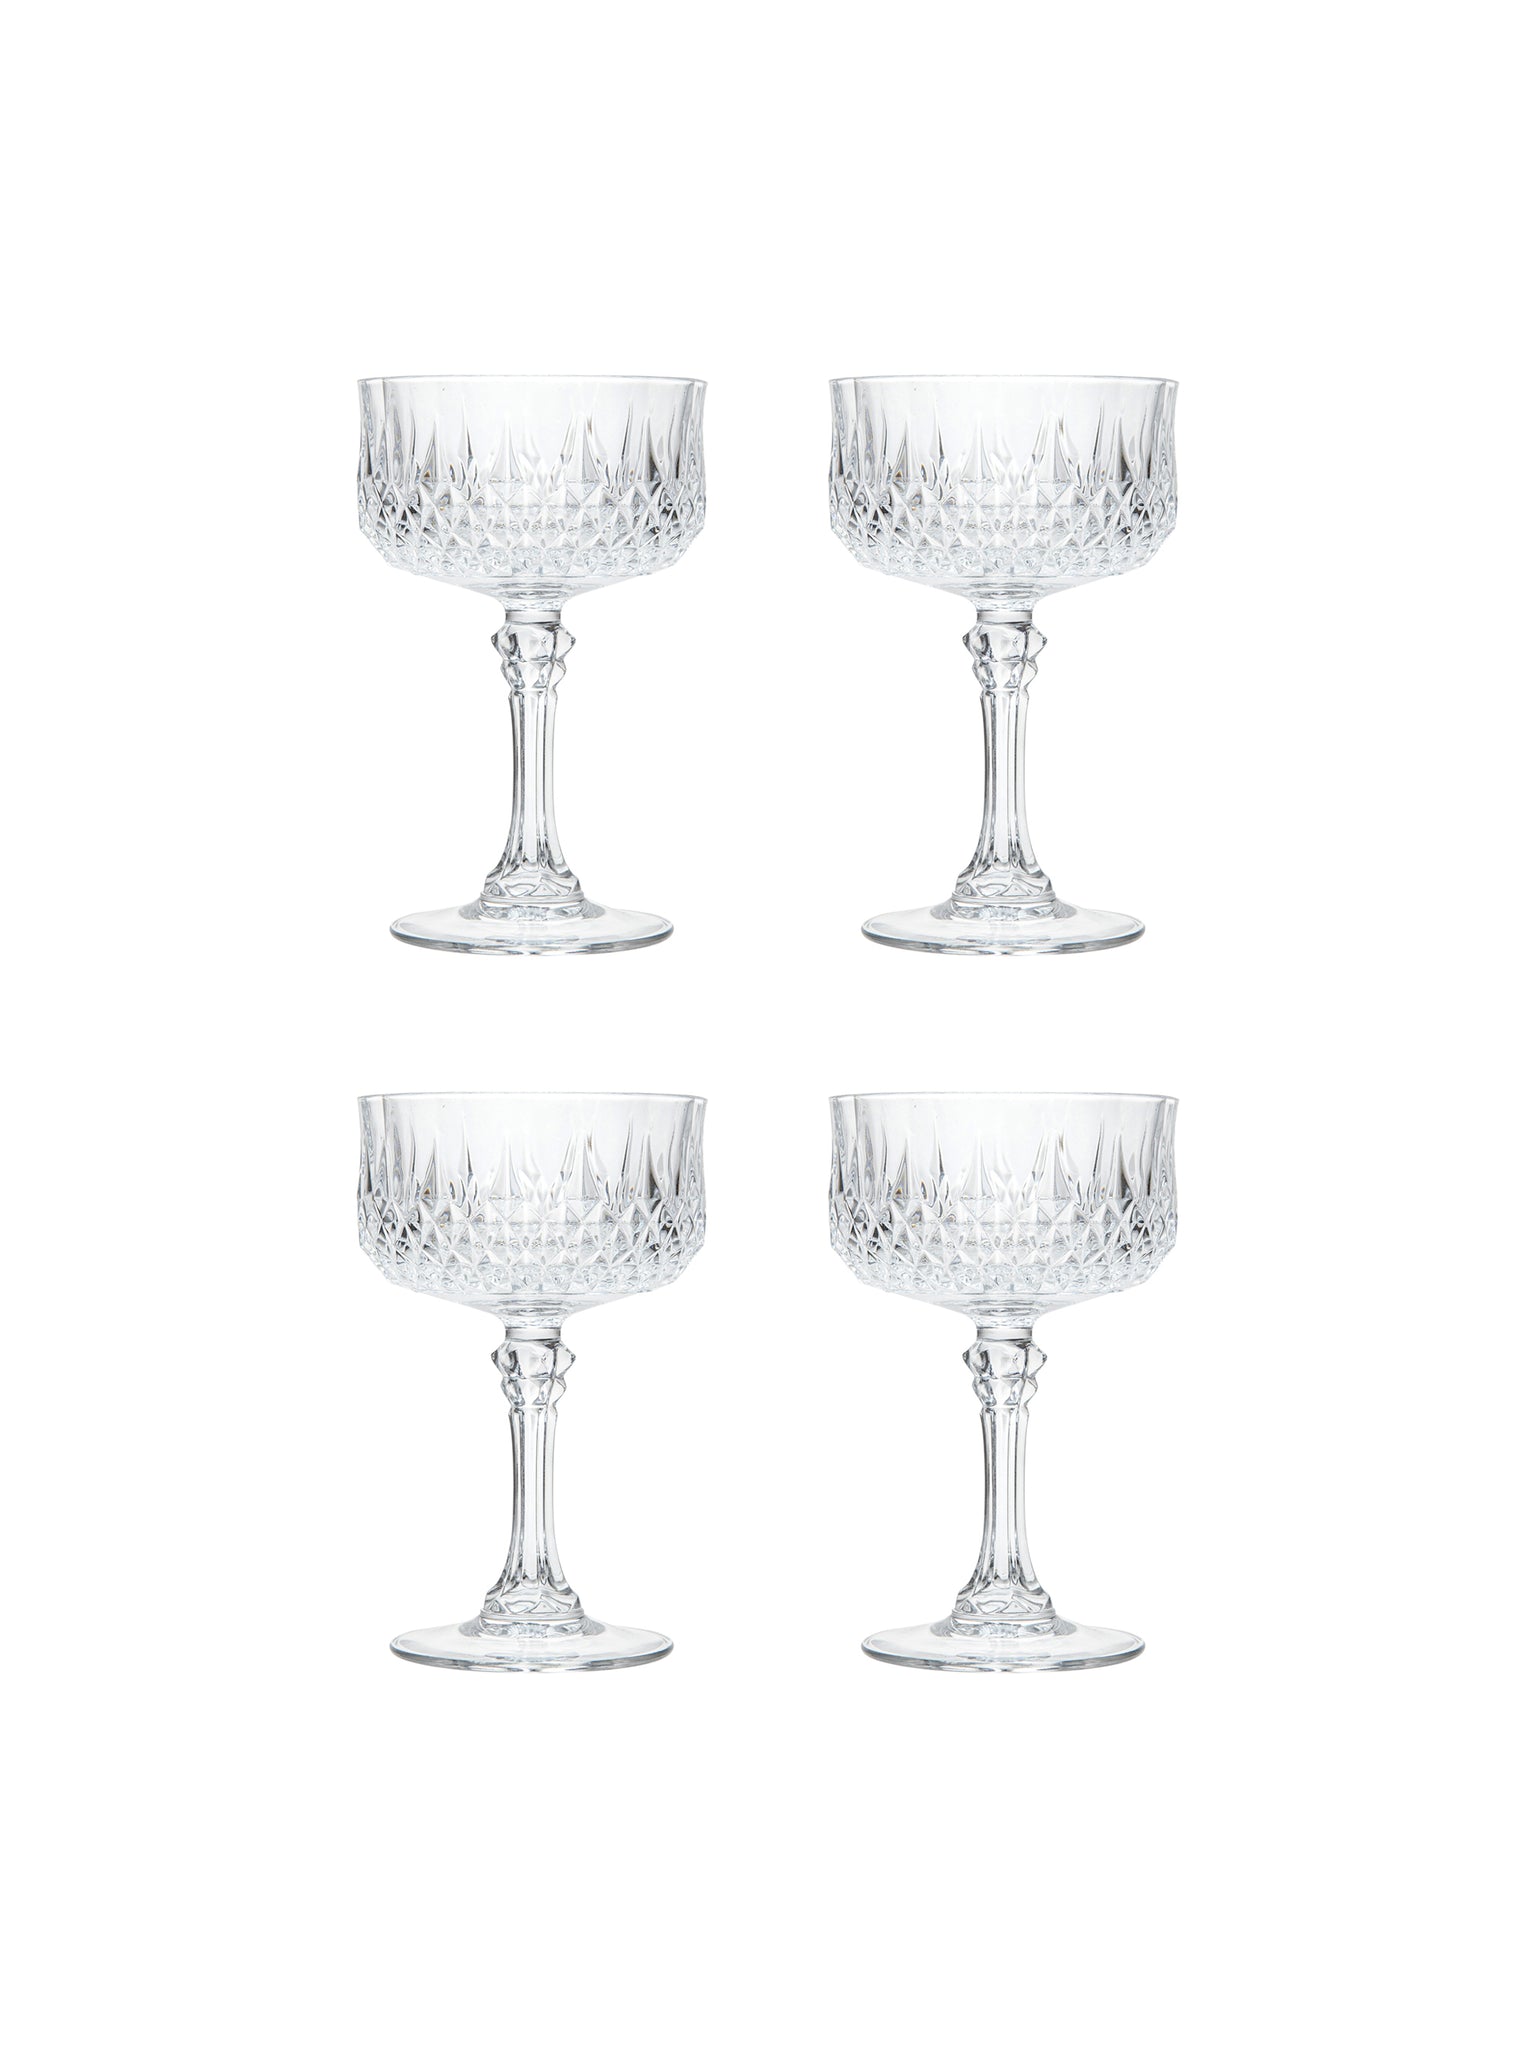 Vintage Cristal D'Arques Longchamp Champagne Coupes Glasses